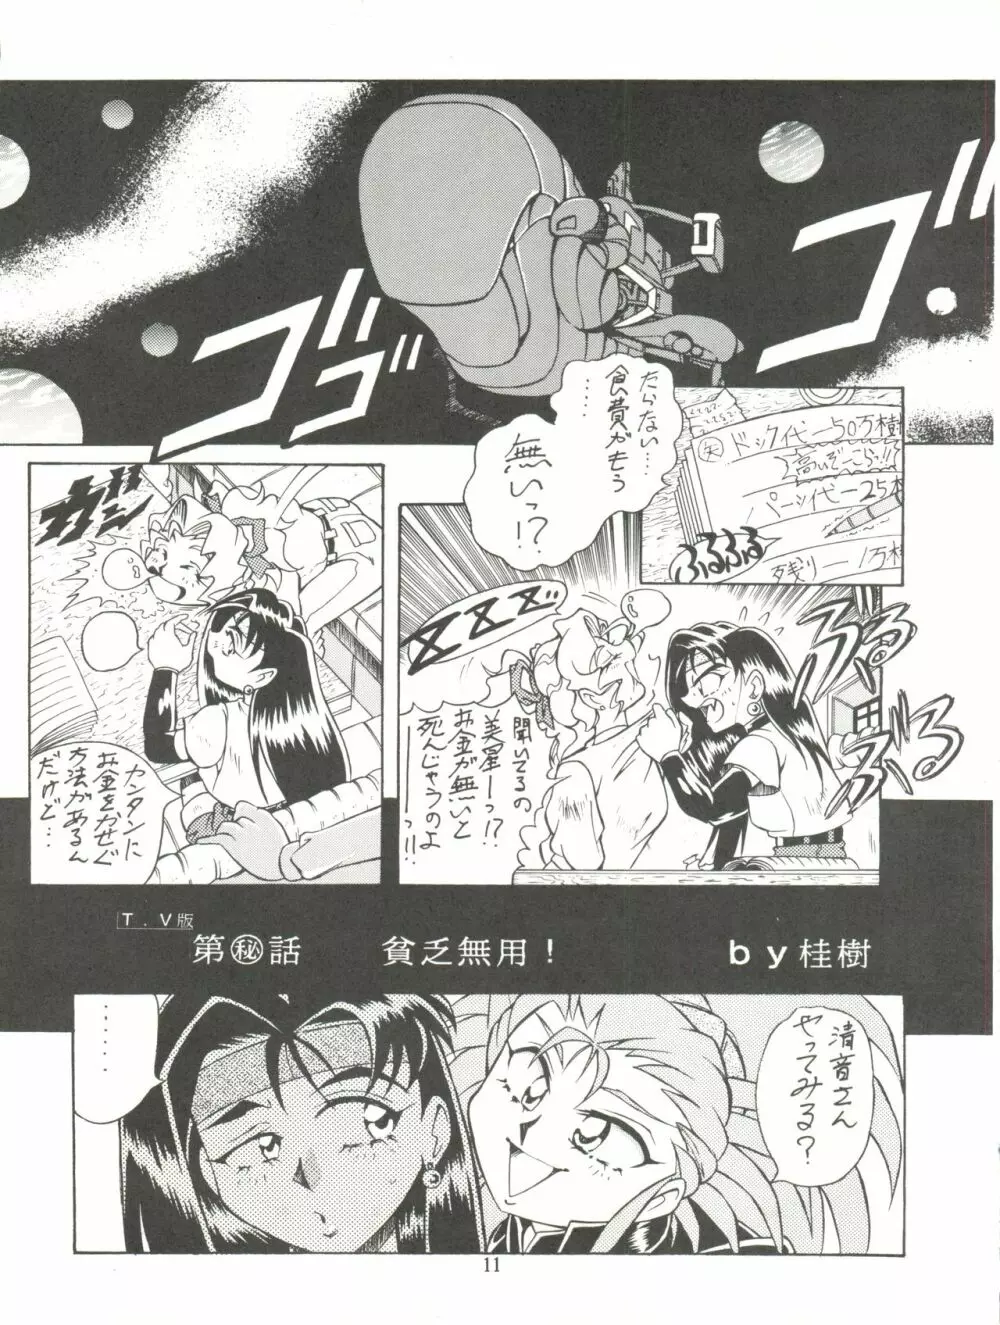 天地無用! みゃーん 3 Final Page.11